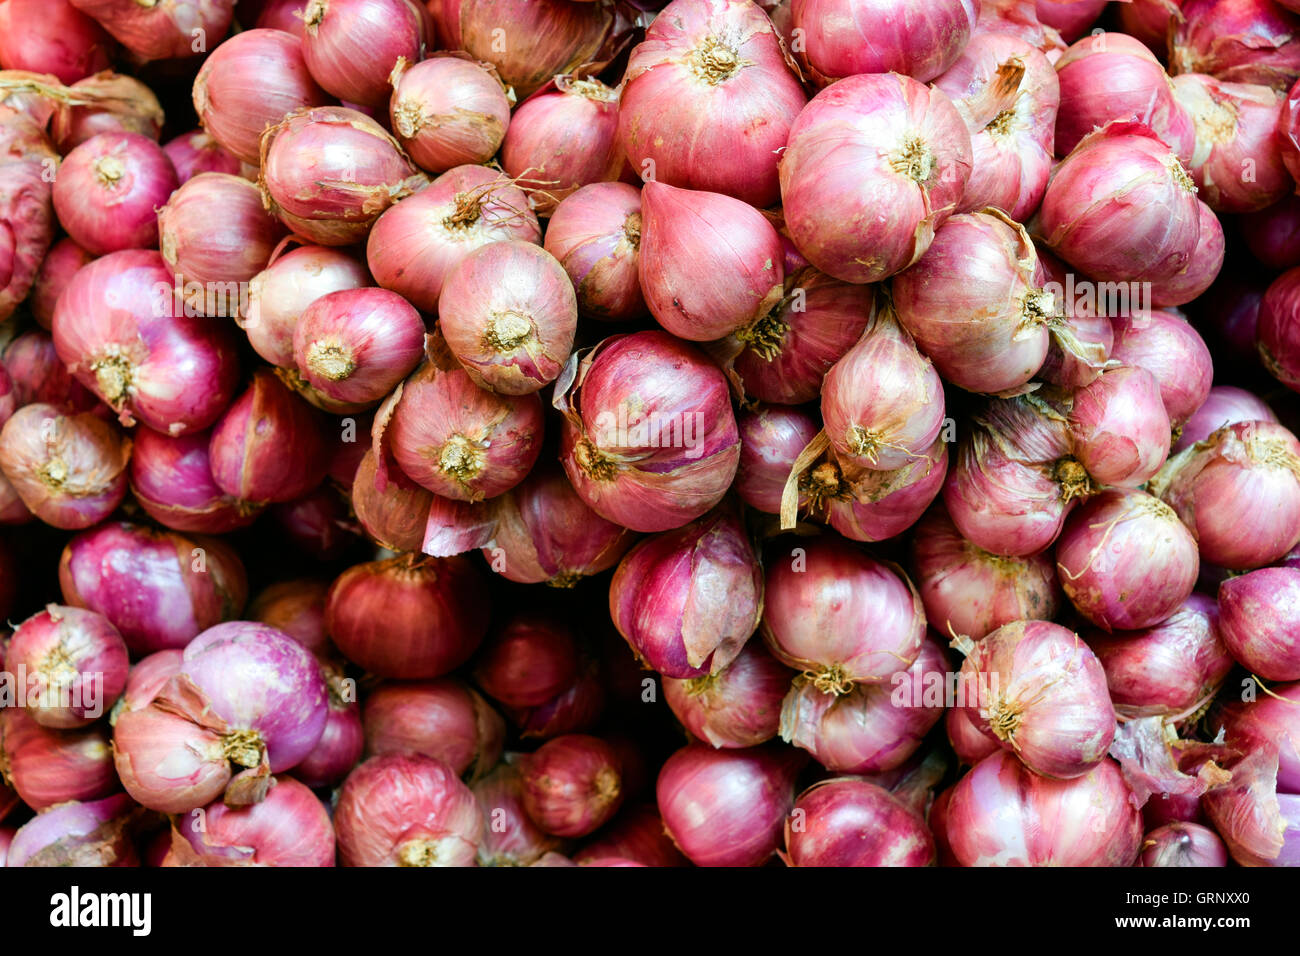 Schalotten-Zwiebeln auf einem lokalen thailändischen Markt in Thailand Stockfoto